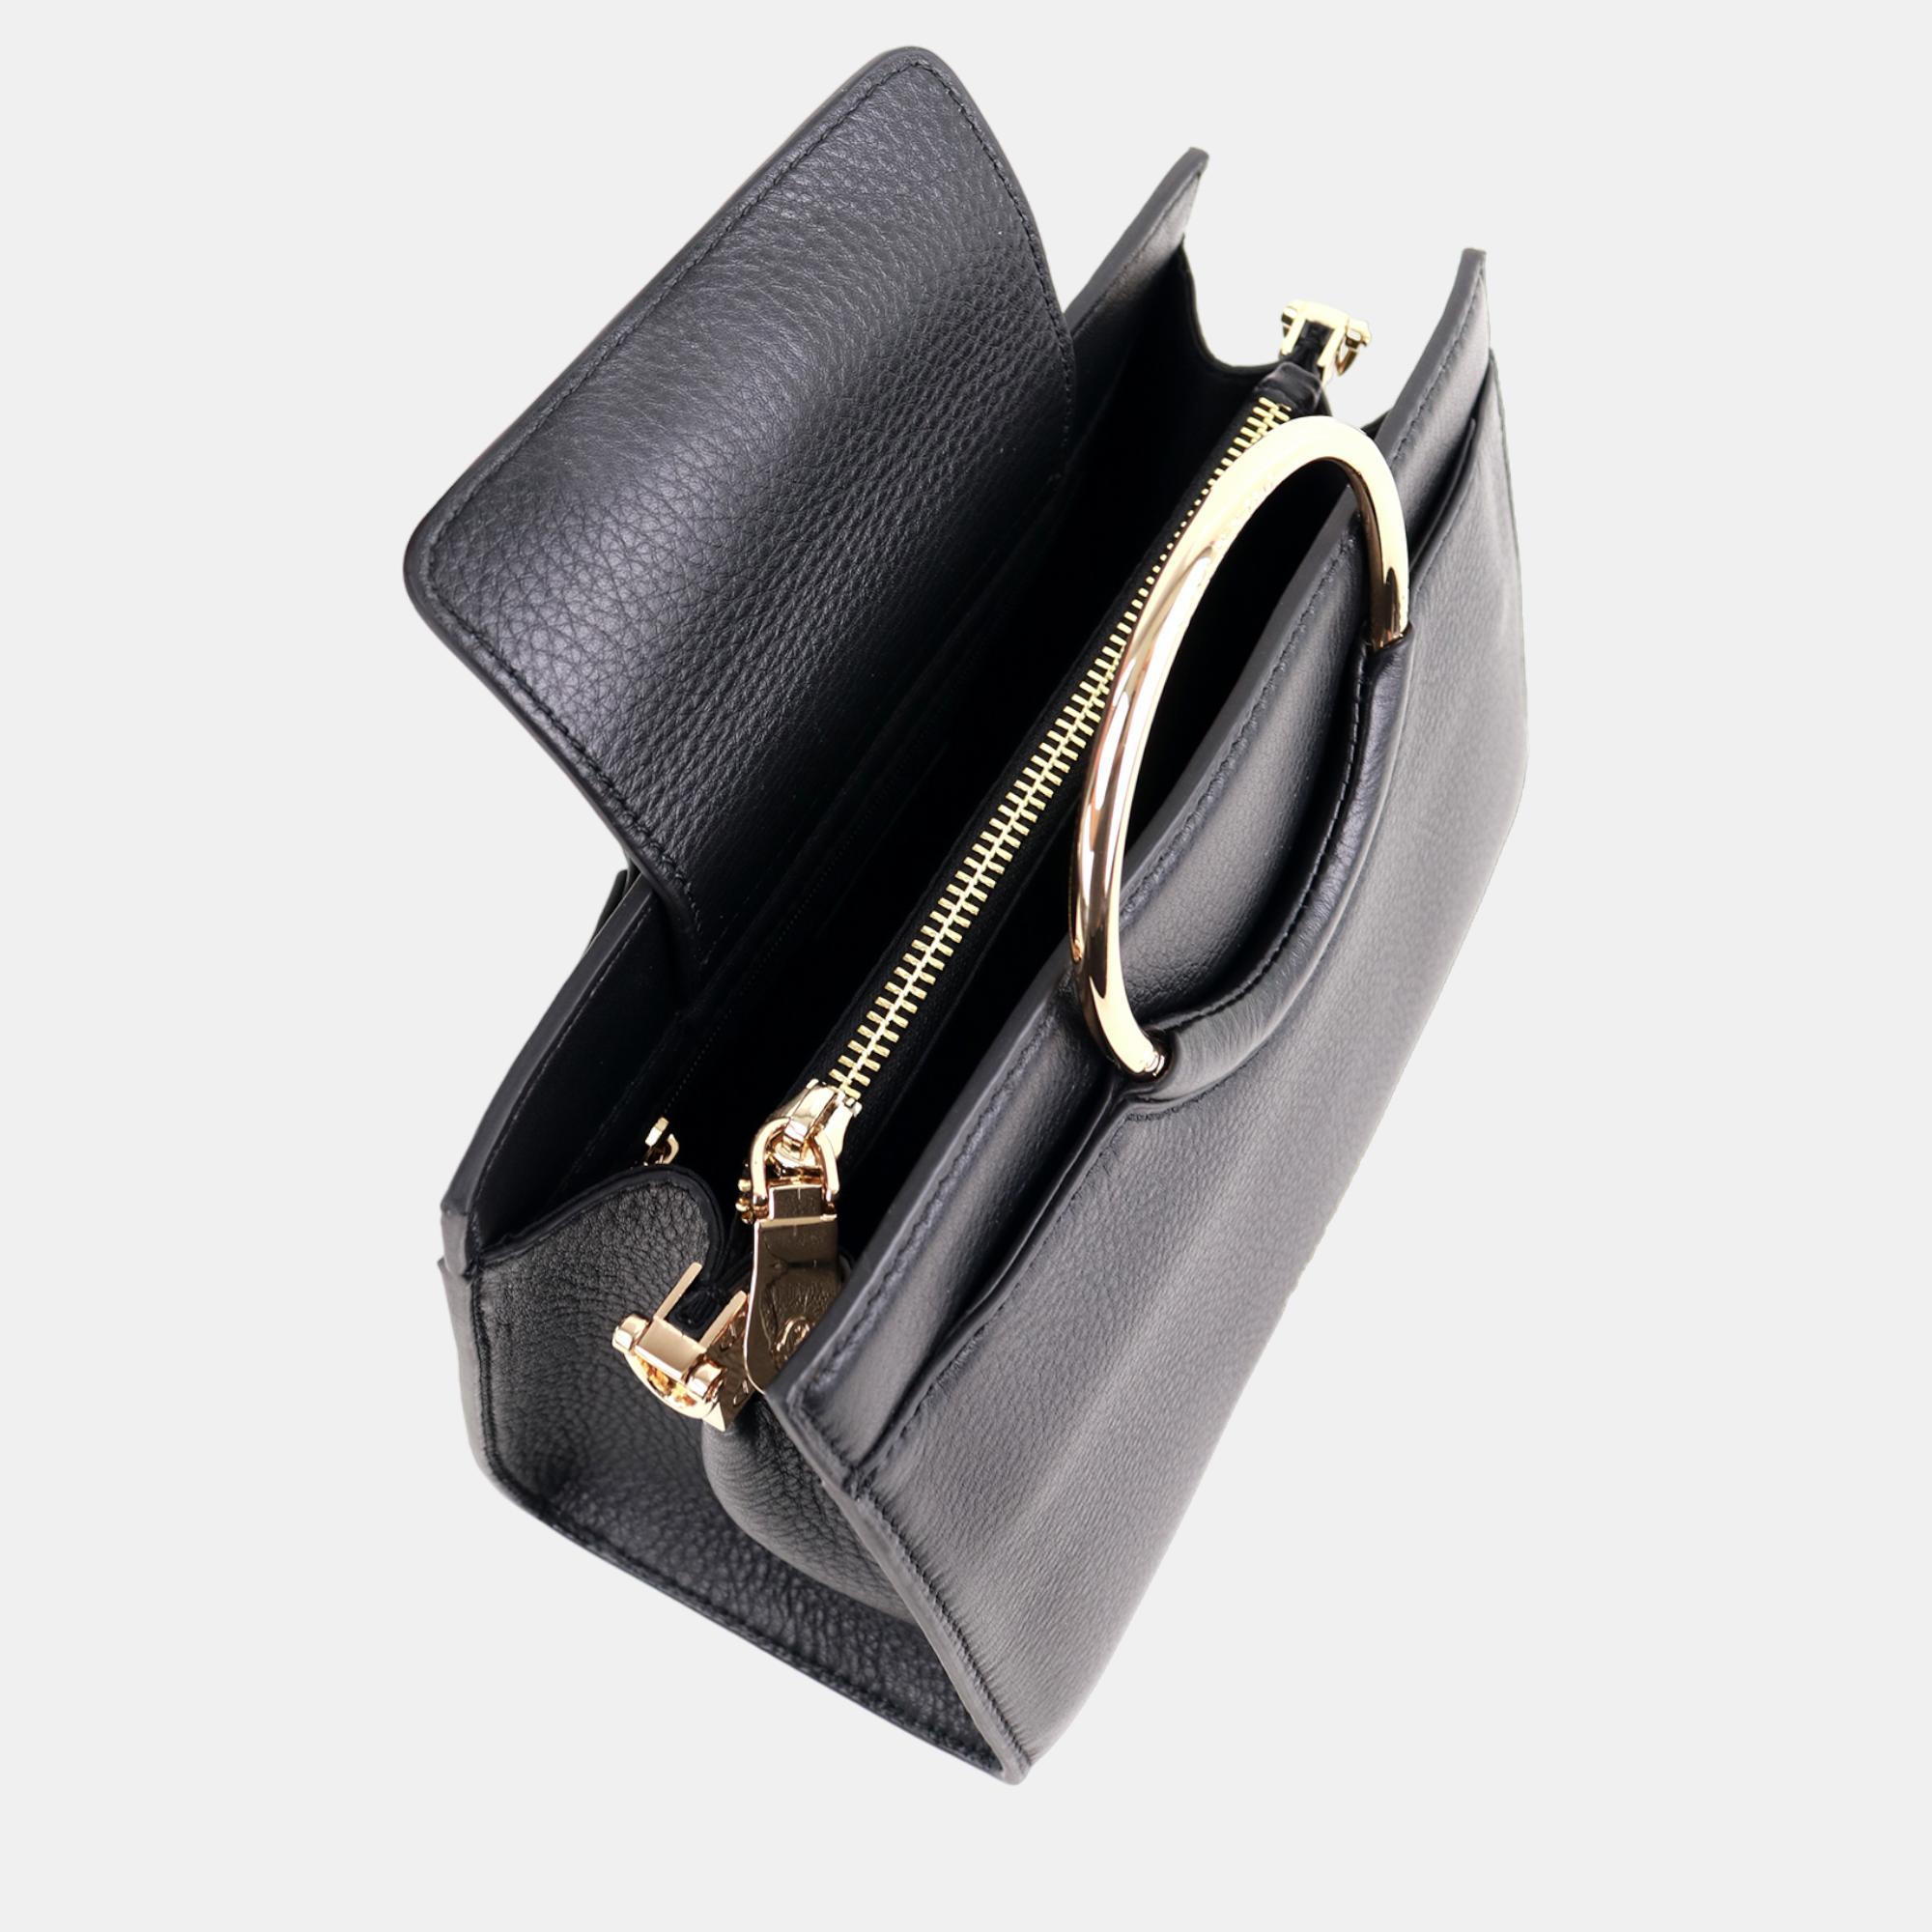 Charriol Black/Light Brown Leather Forever Handbag